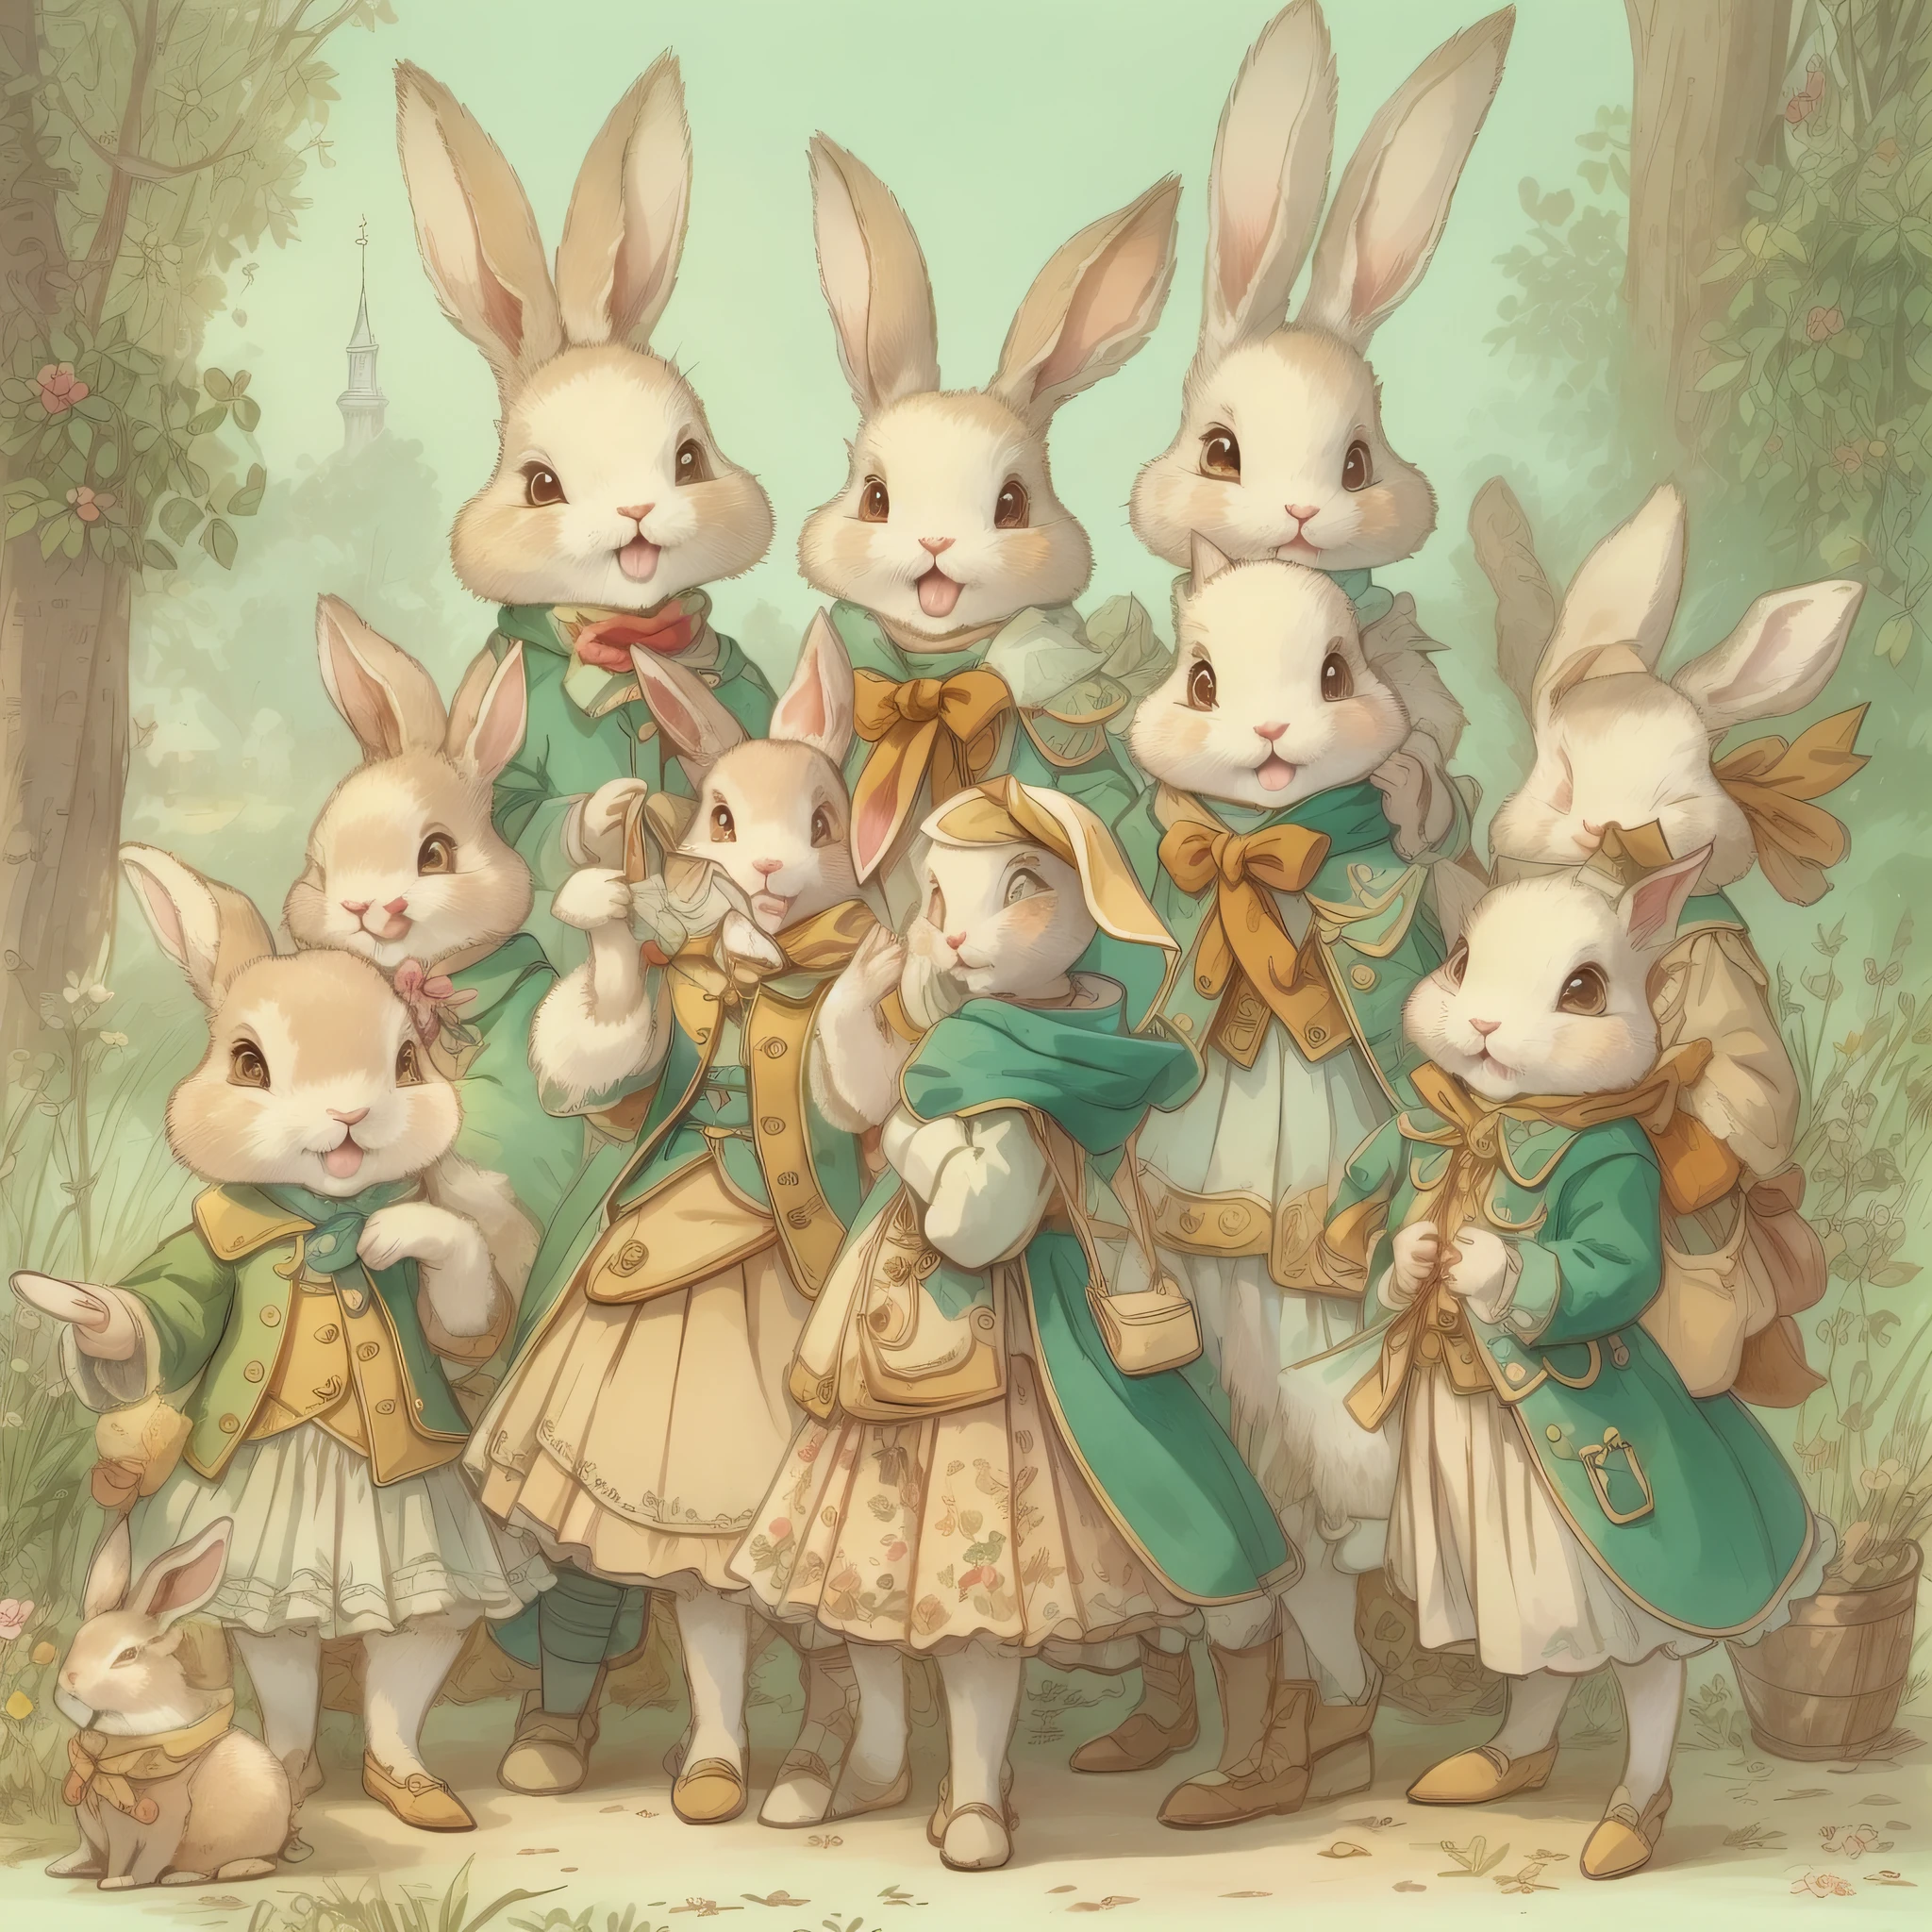 超高畫質、超精緻、角色設計圖、全身像、多重姿勢、多種臉部表情、擬人化可愛兔子、童話故事裡的可愛角色、穿著外套的可愛兔子、18世紀法國服裝、色彩繽紛、